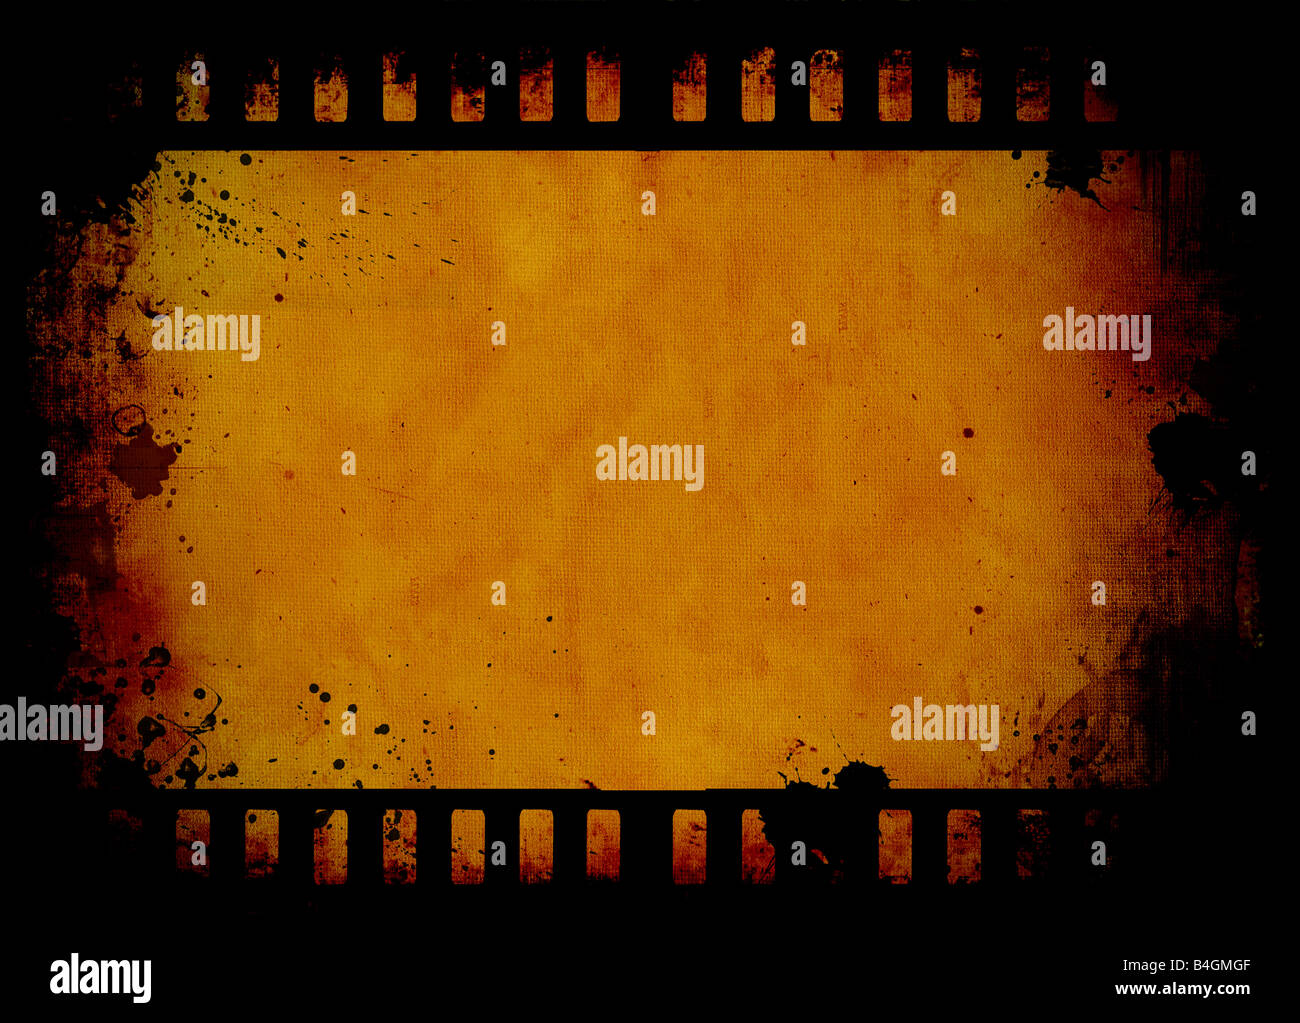 Film strip grunge background Stock Photo